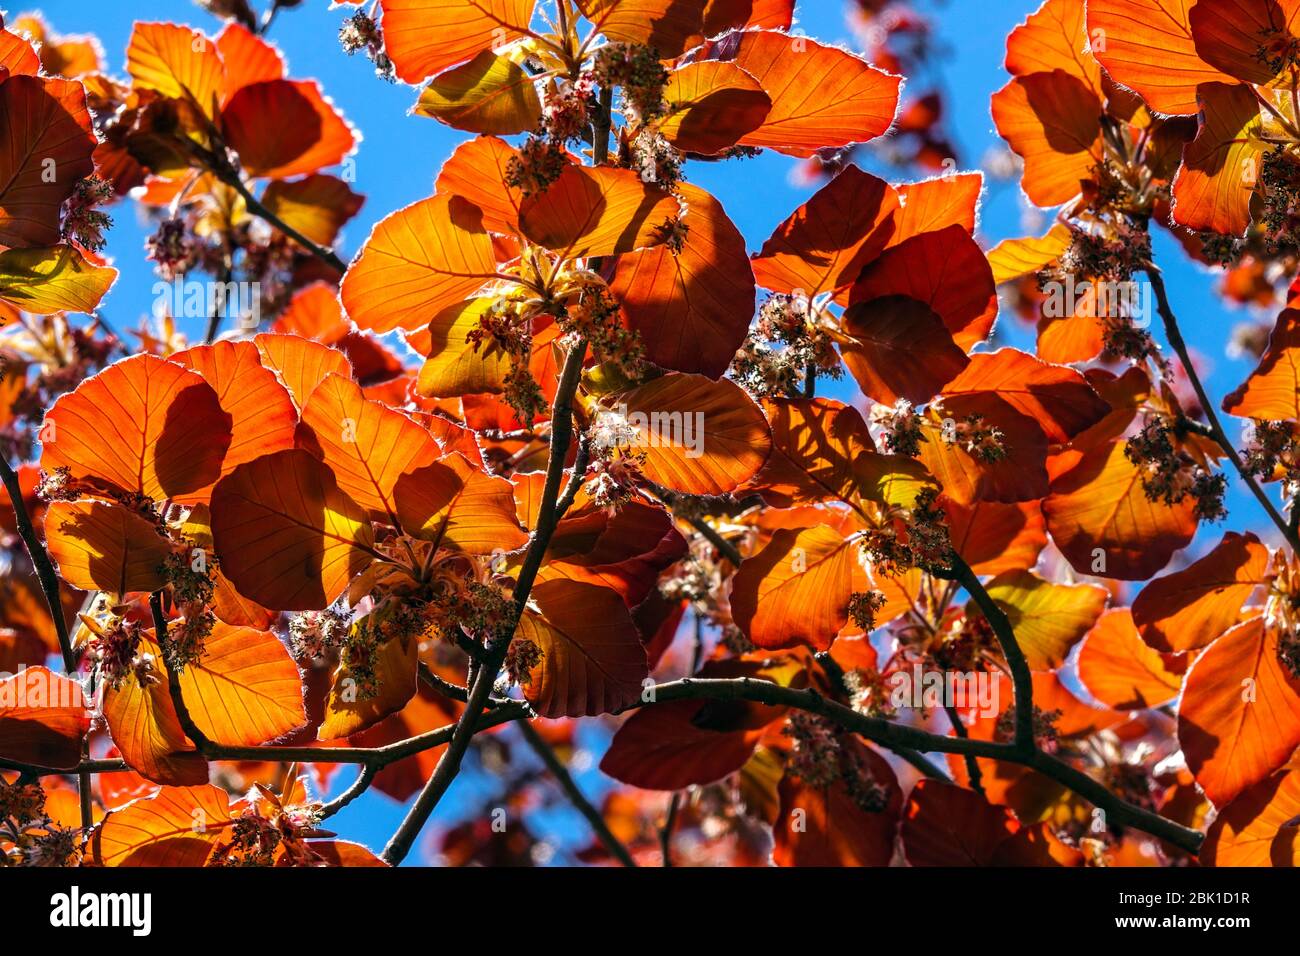 Faggio europeo Fagus sylvatica 'Atropurpurea' foglie rosse che brillano la luce del sole attraverso le foglie Foto Stock